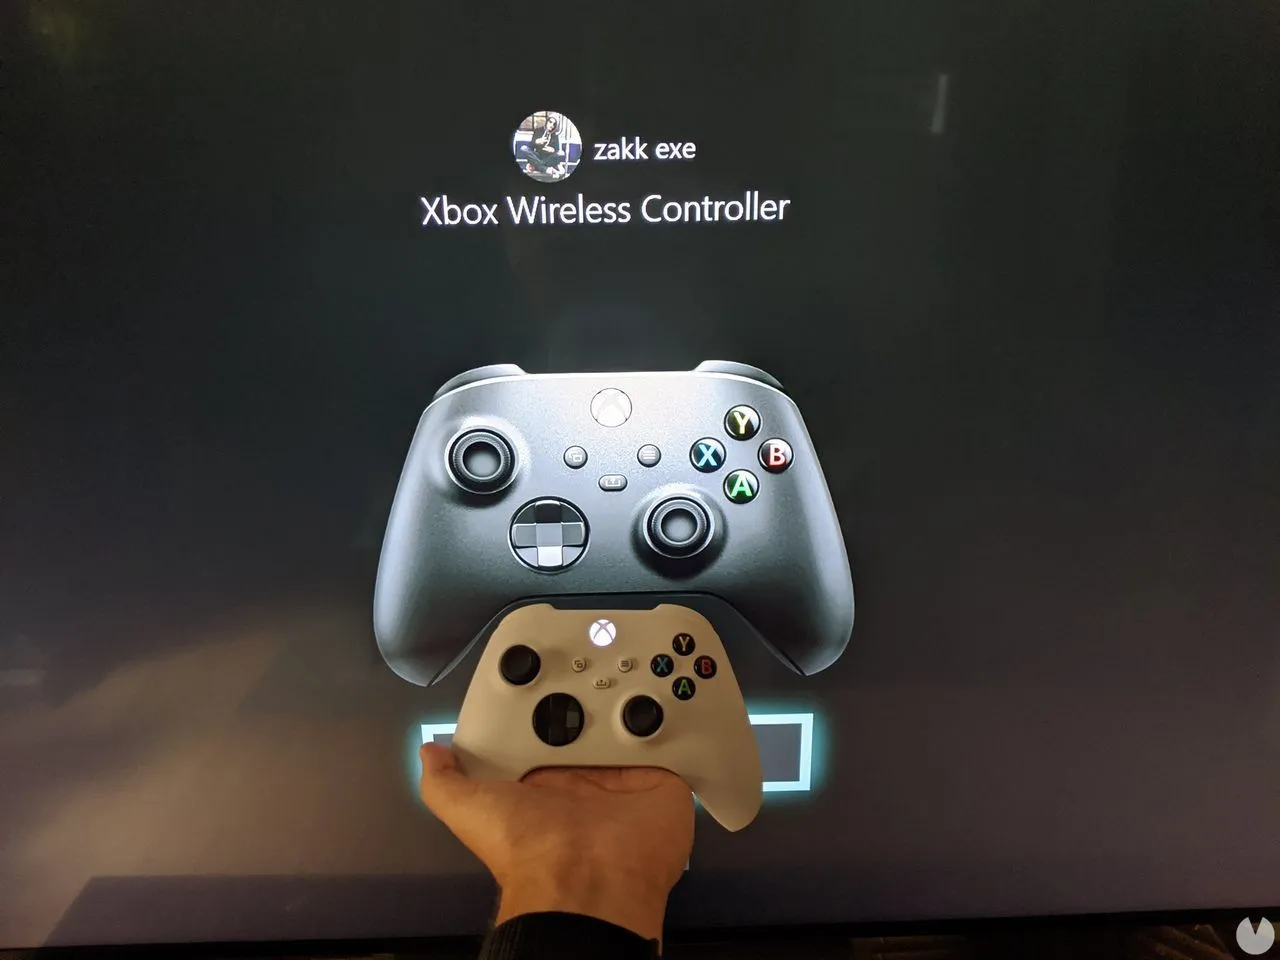 Así es el mando de Xbox Series X comparado con el de Xbox One - Vandal